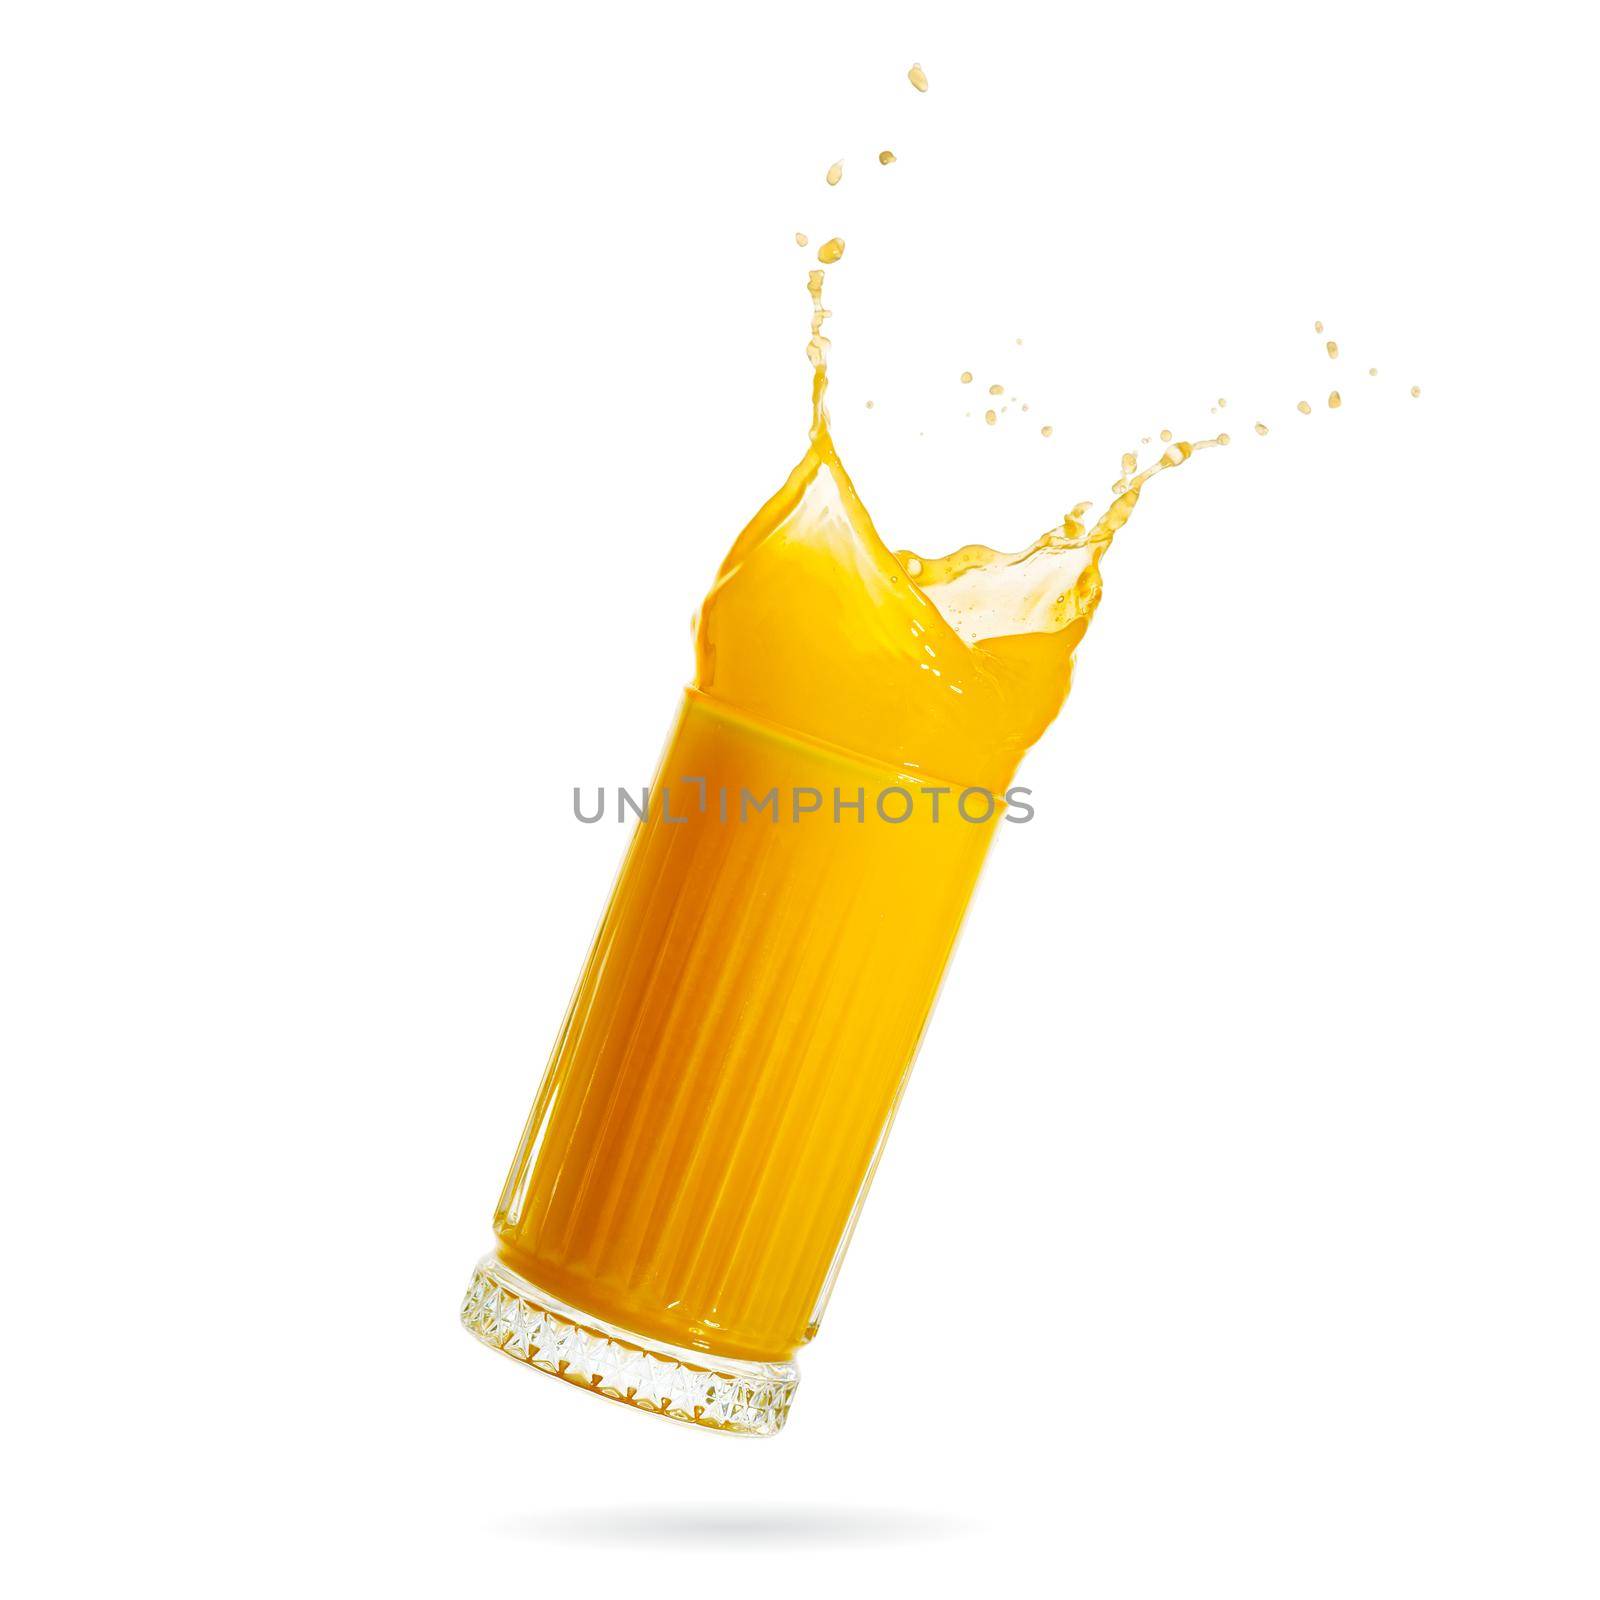 orange juice splash isolated on white. glass of splashing orange juice. close up. stock photo by PhotoTime